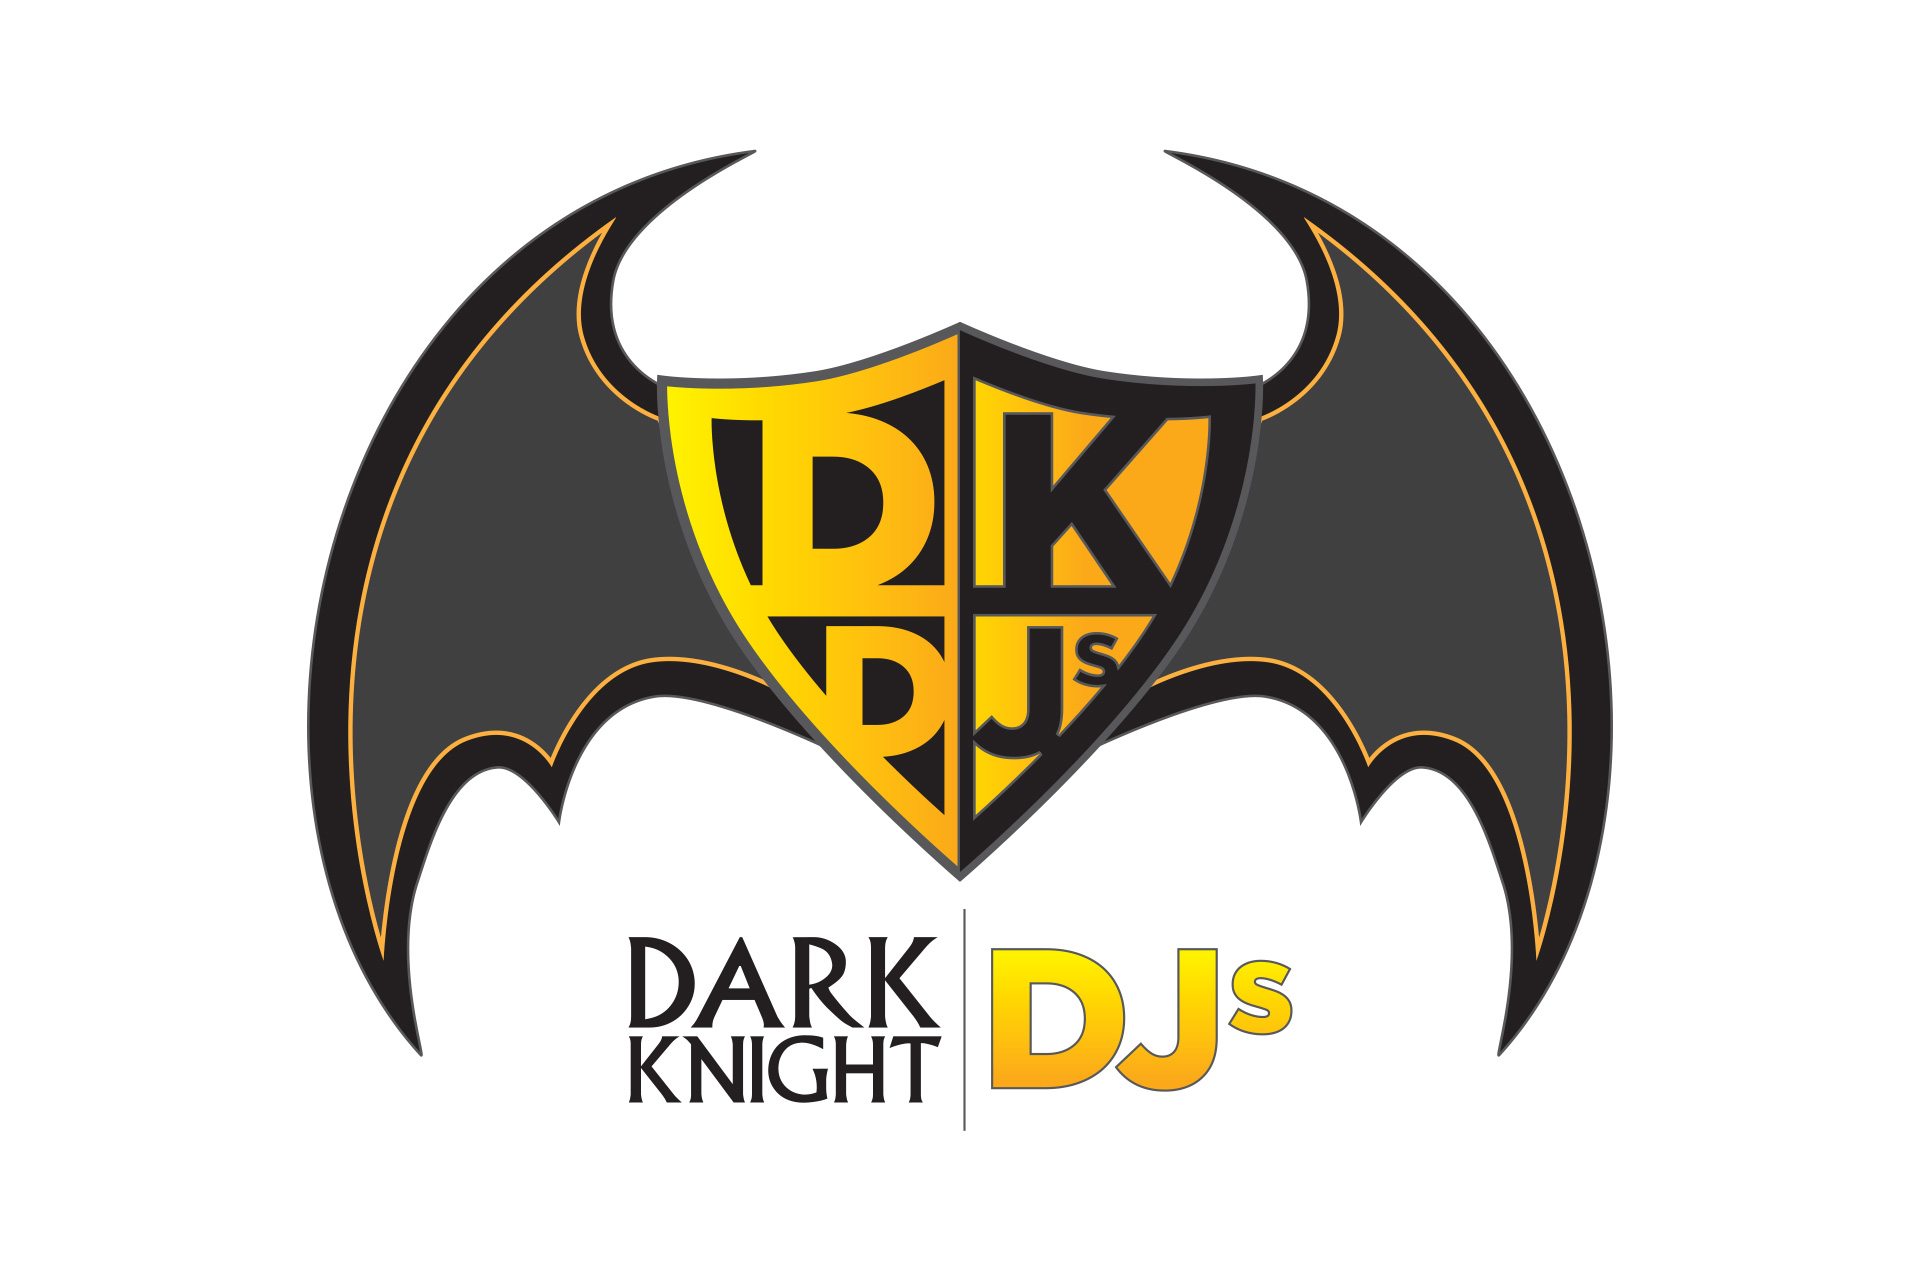 Dark Knight DJs